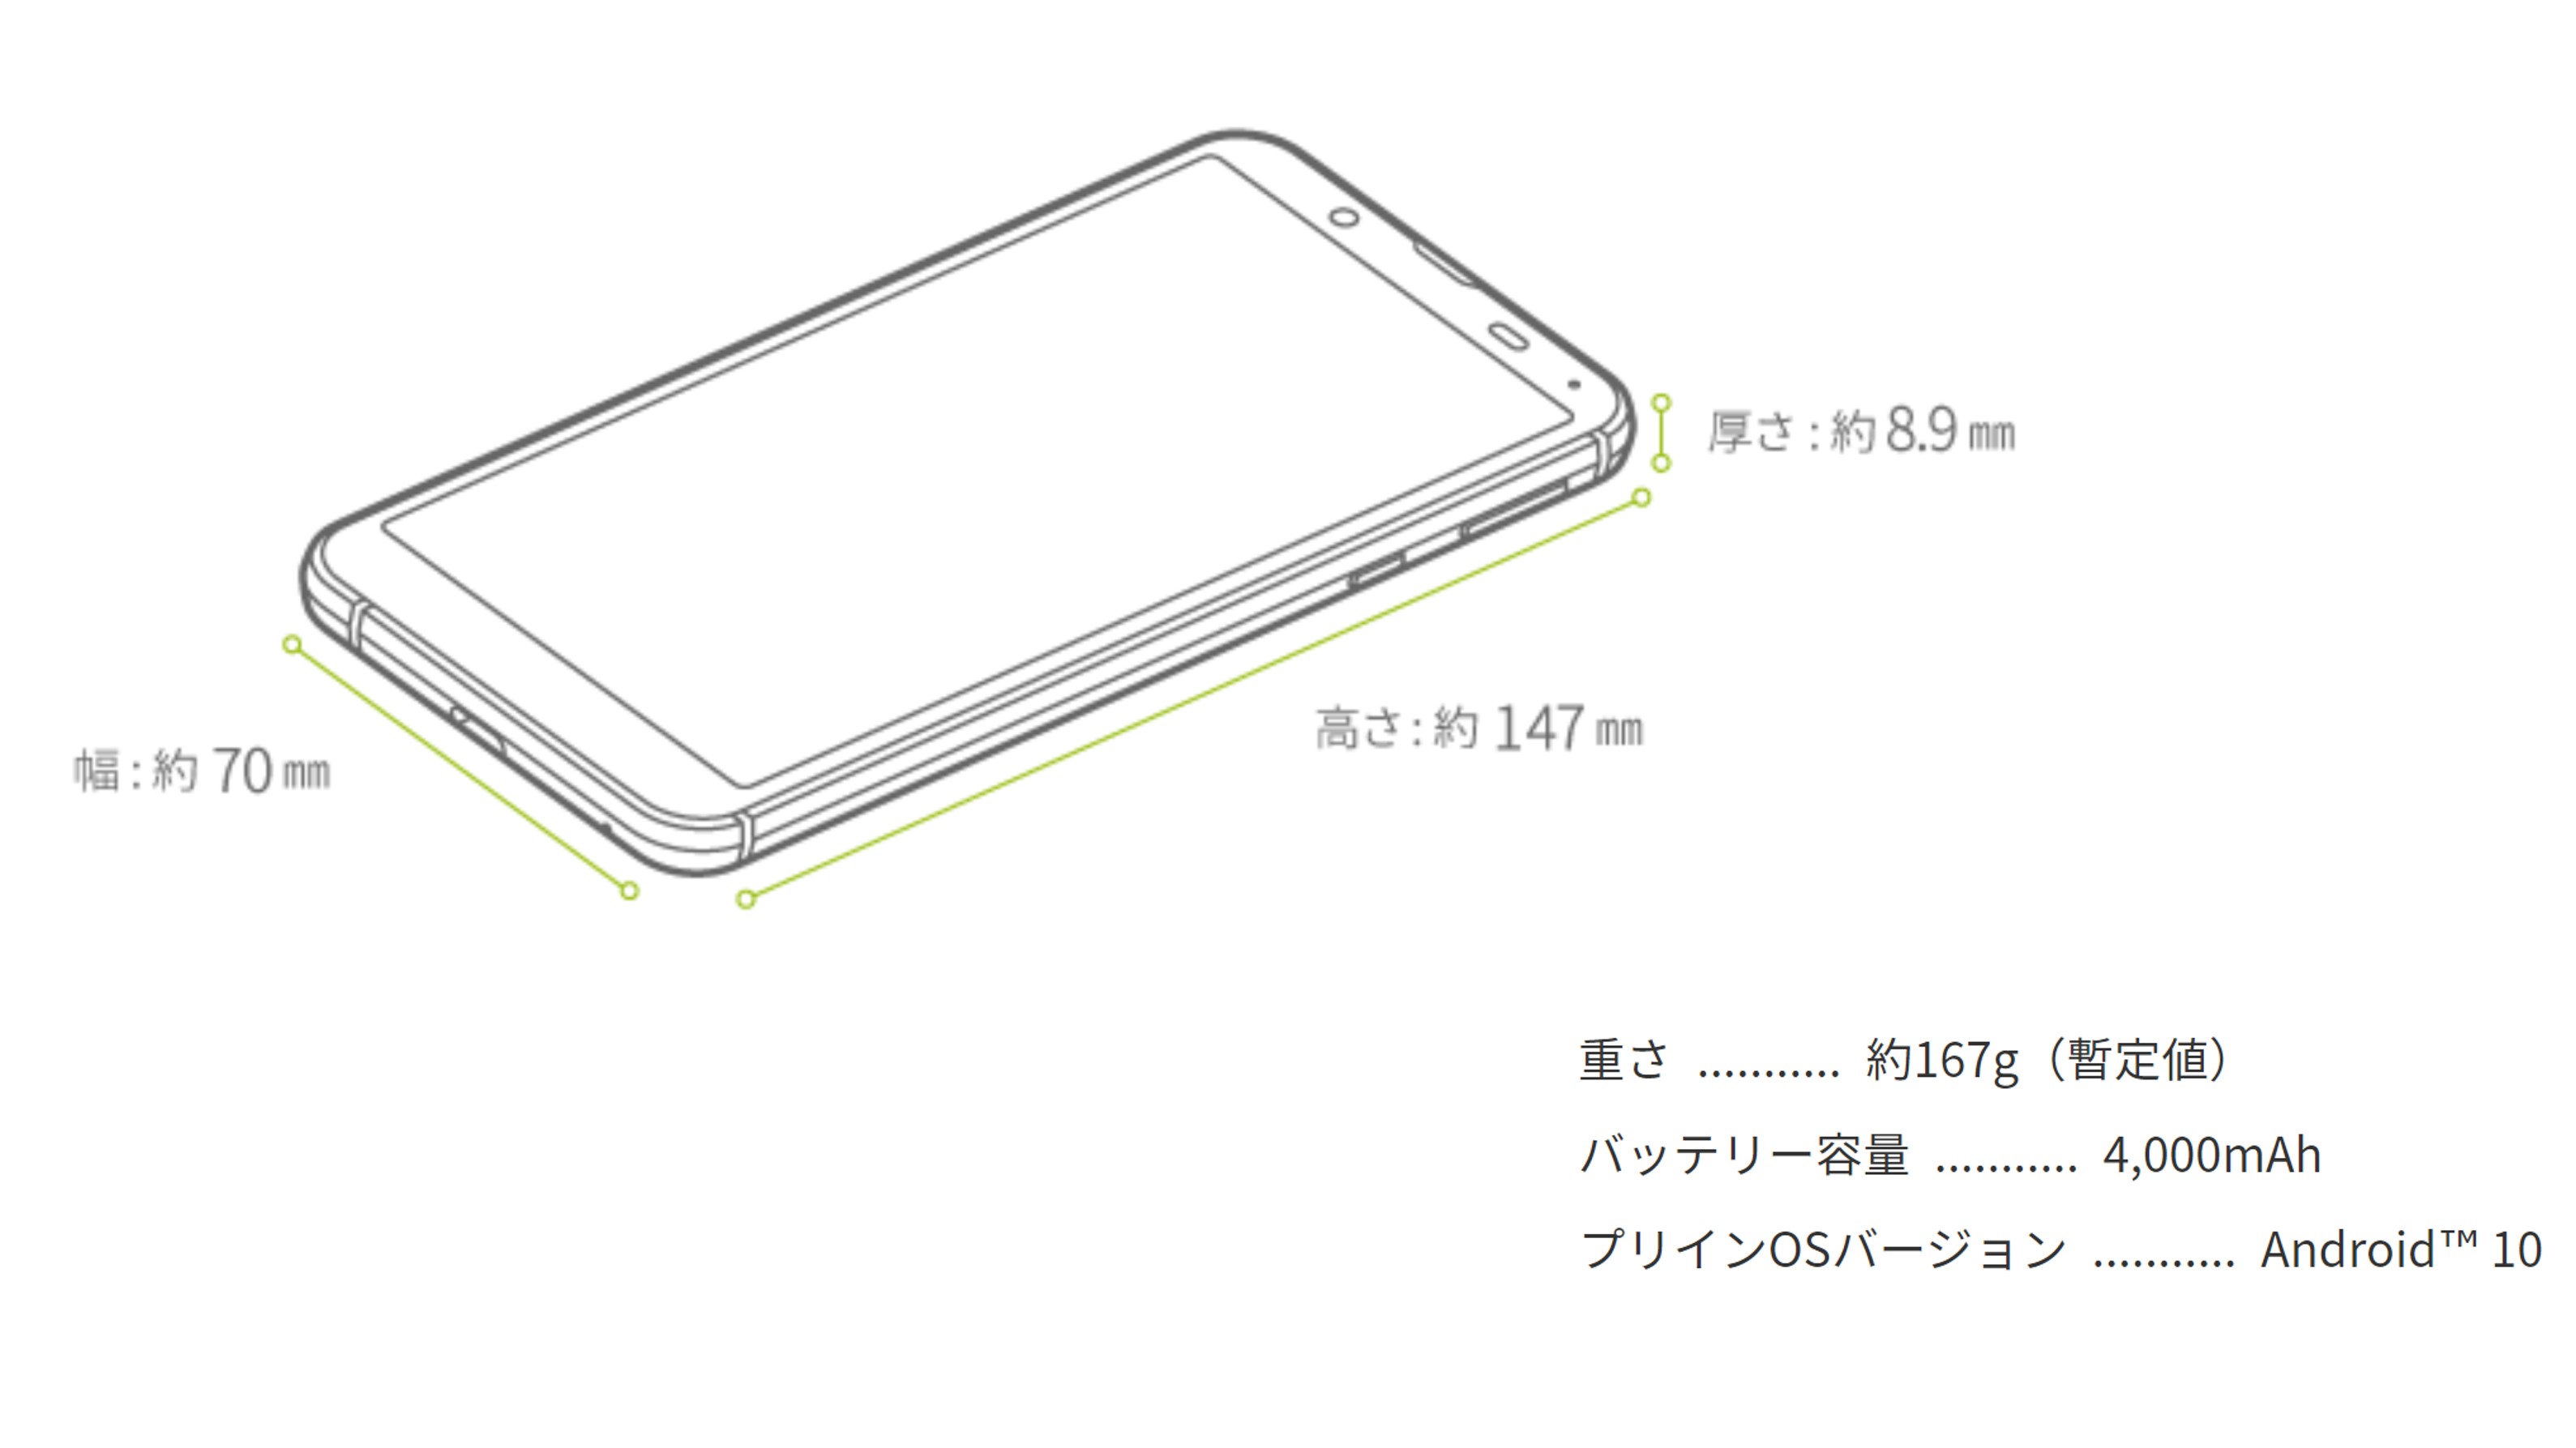 【Sharp】Android One「S 7」の特徴とスペック仕様